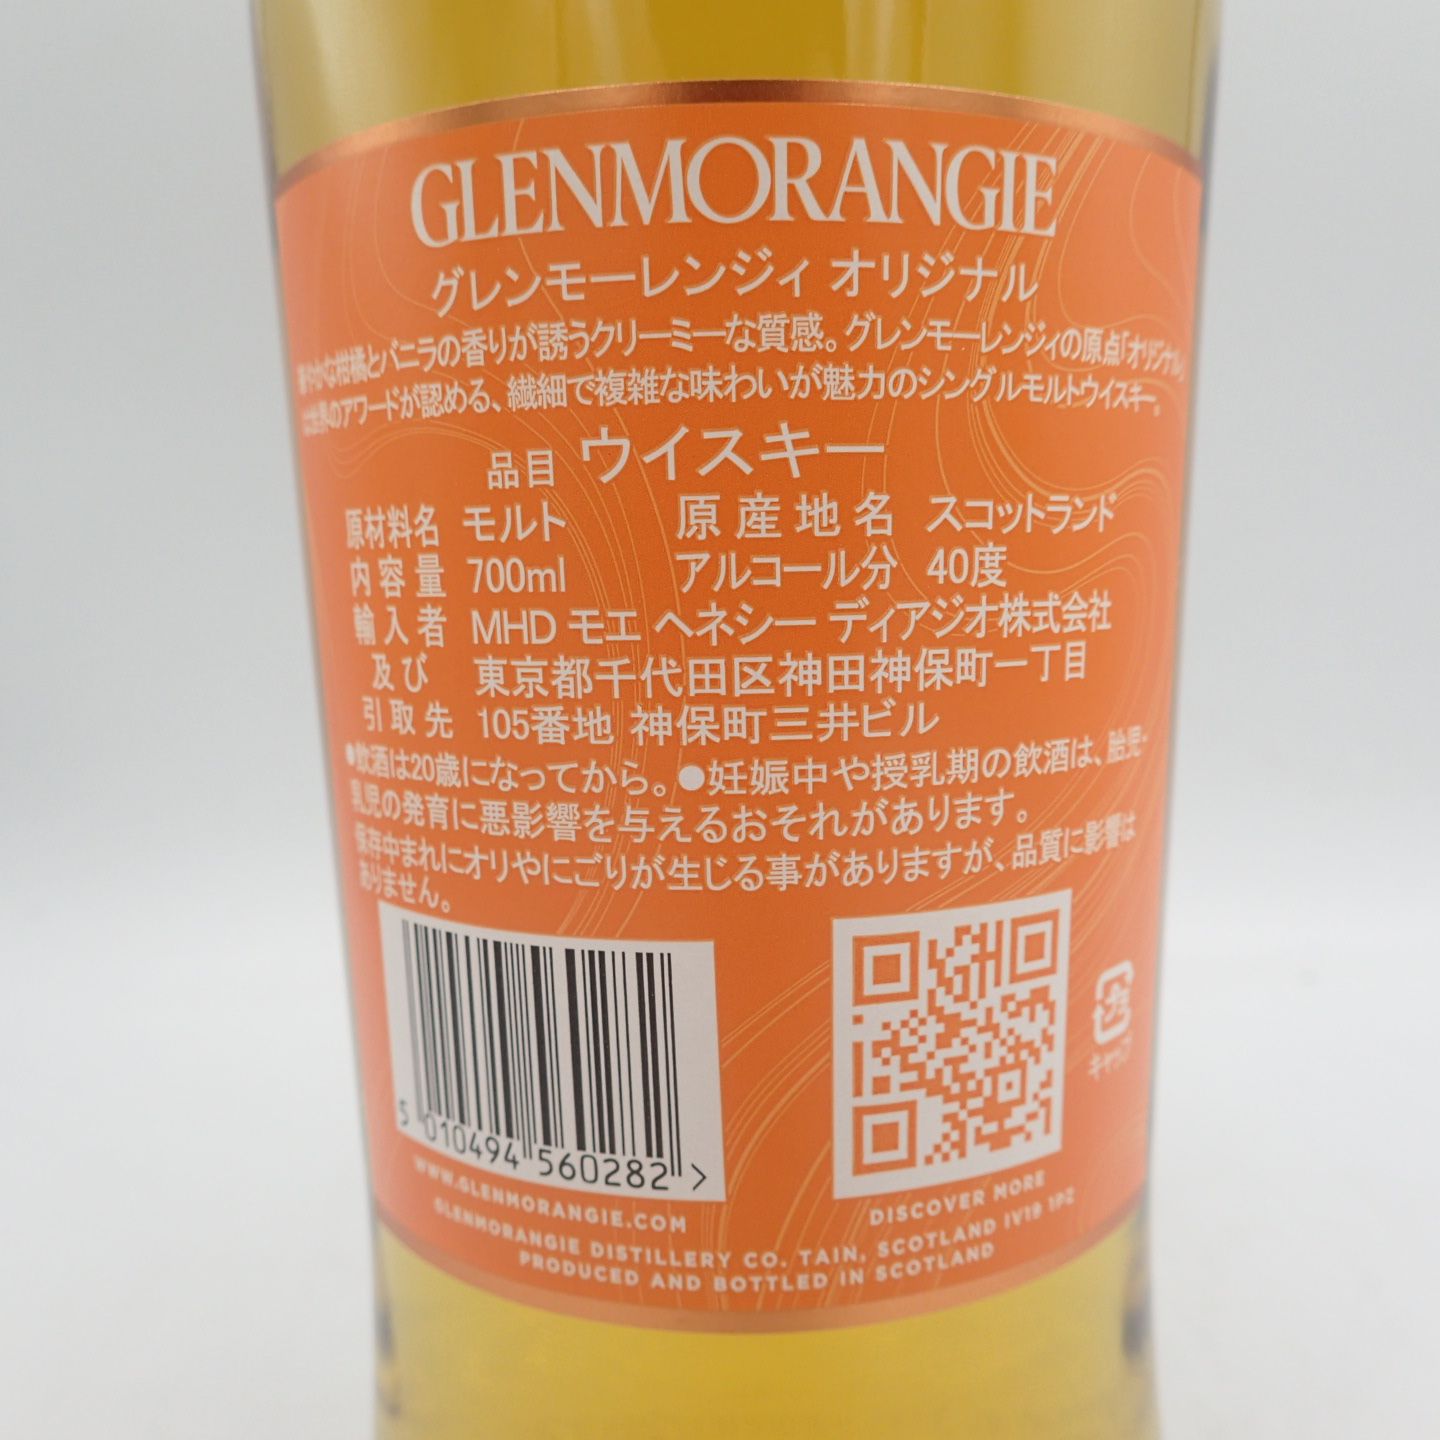 付属品箱×6【セット】グレンモーレンジ 10年 オリジナル 700ml 同梱不可【7F】 - ウイスキー